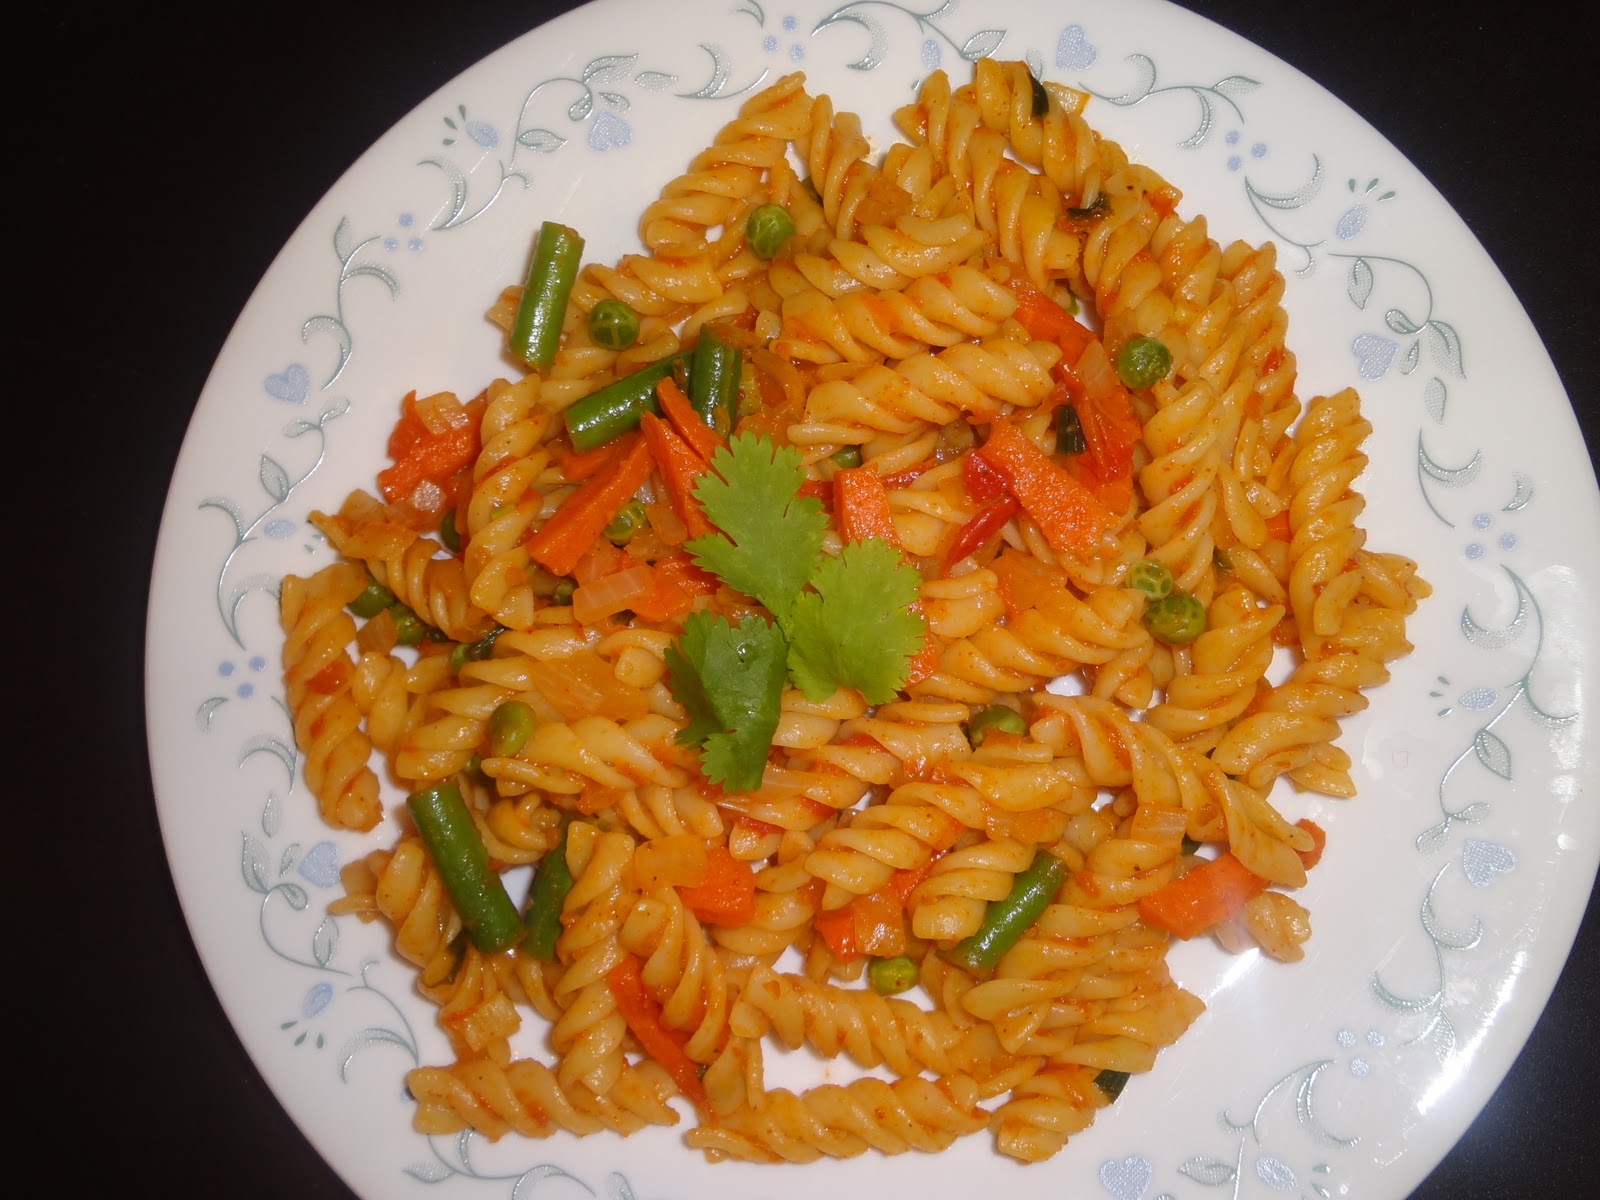 Achusmenu- Indian Vegetarian Cooking: Indian Vegetable Pasta